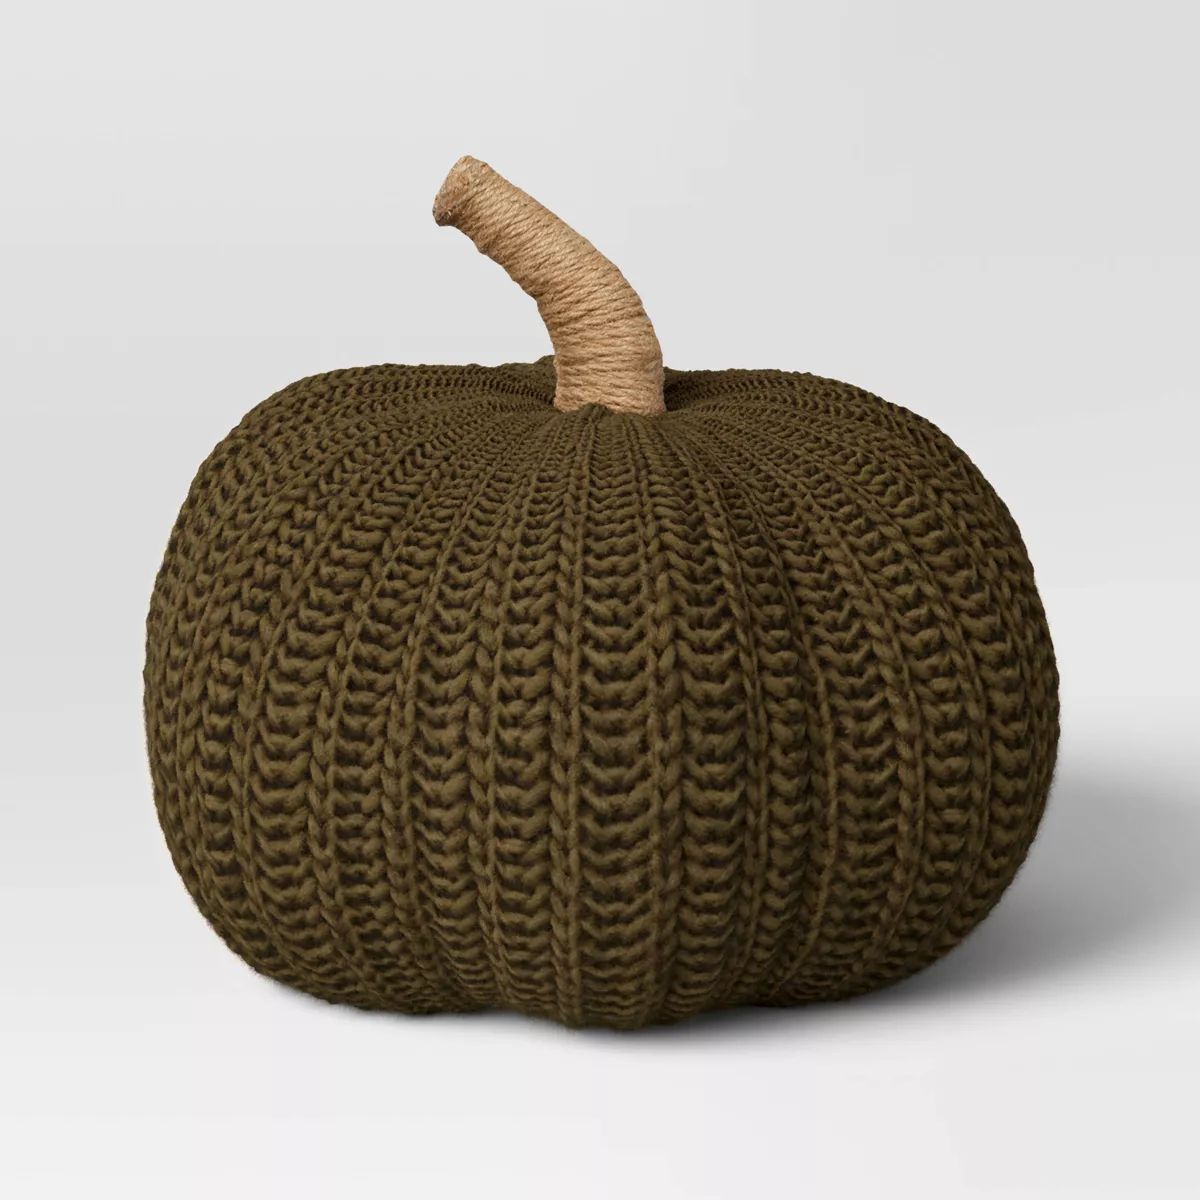 Knit Pumpkin with Jute Stem Novelty Throw Pillow - Threshold™ | Target